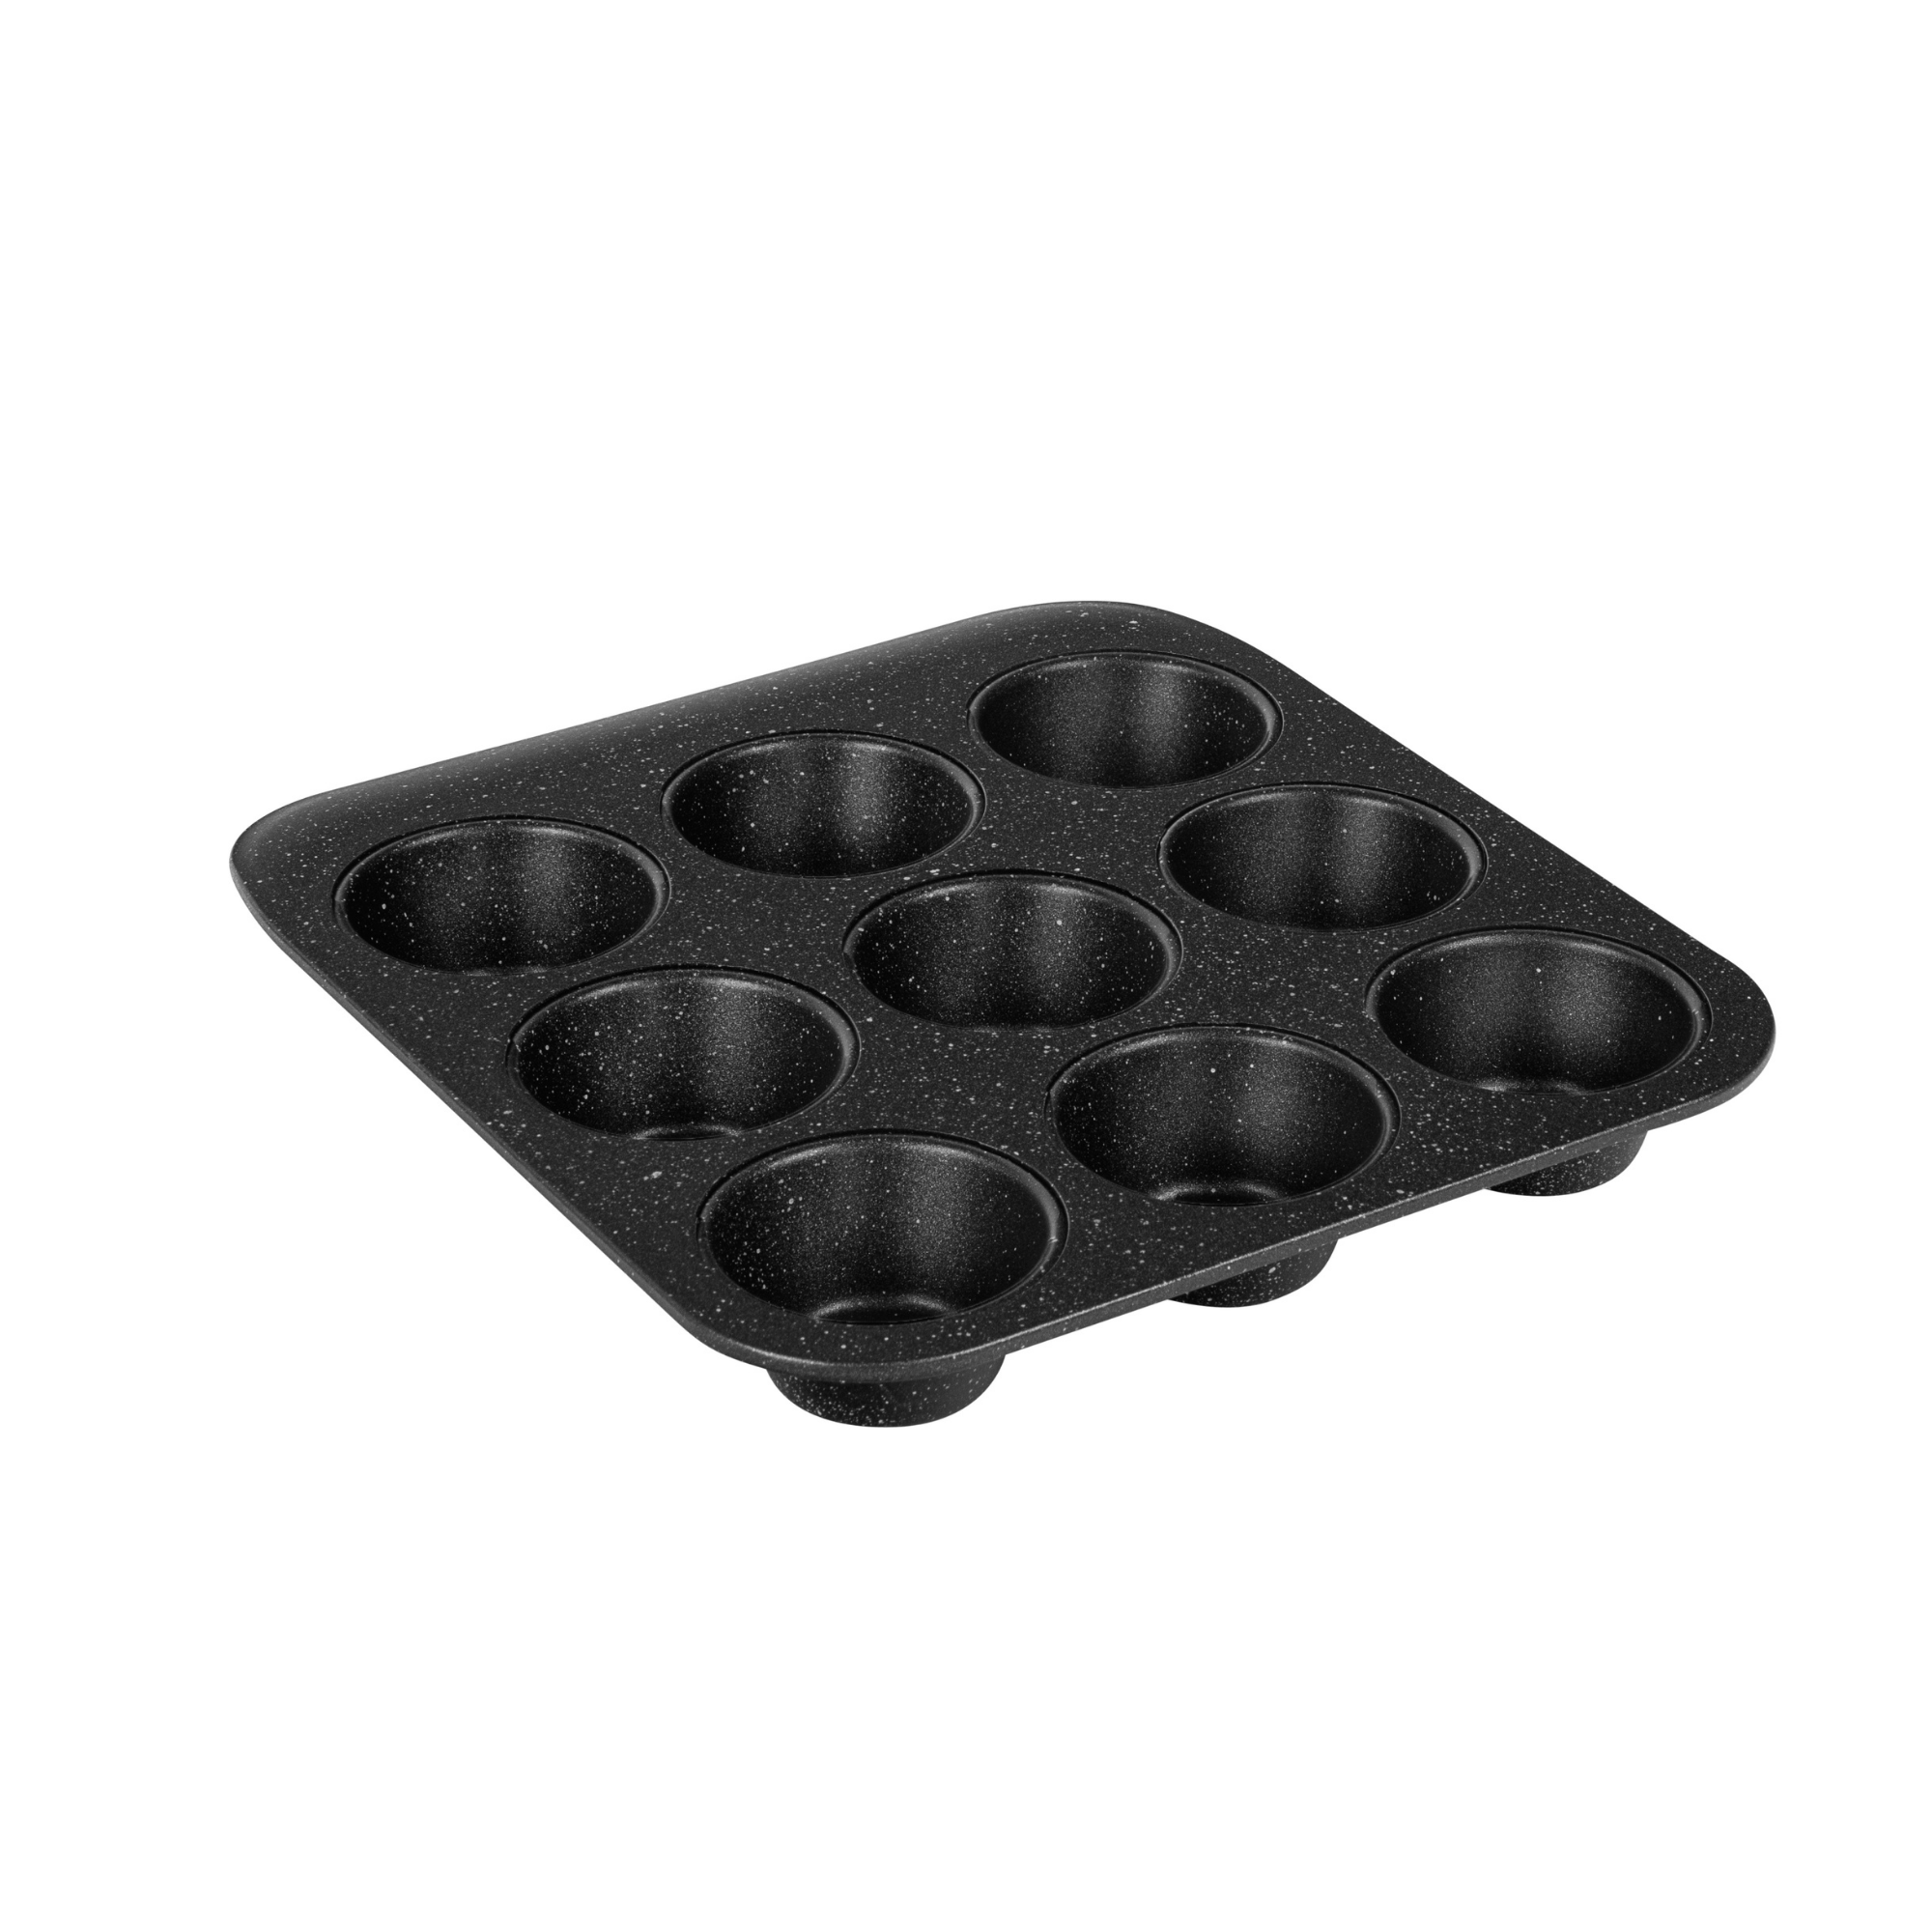 Granitestone 6 Piece Nonstick Stackable Bakeware Set - Black